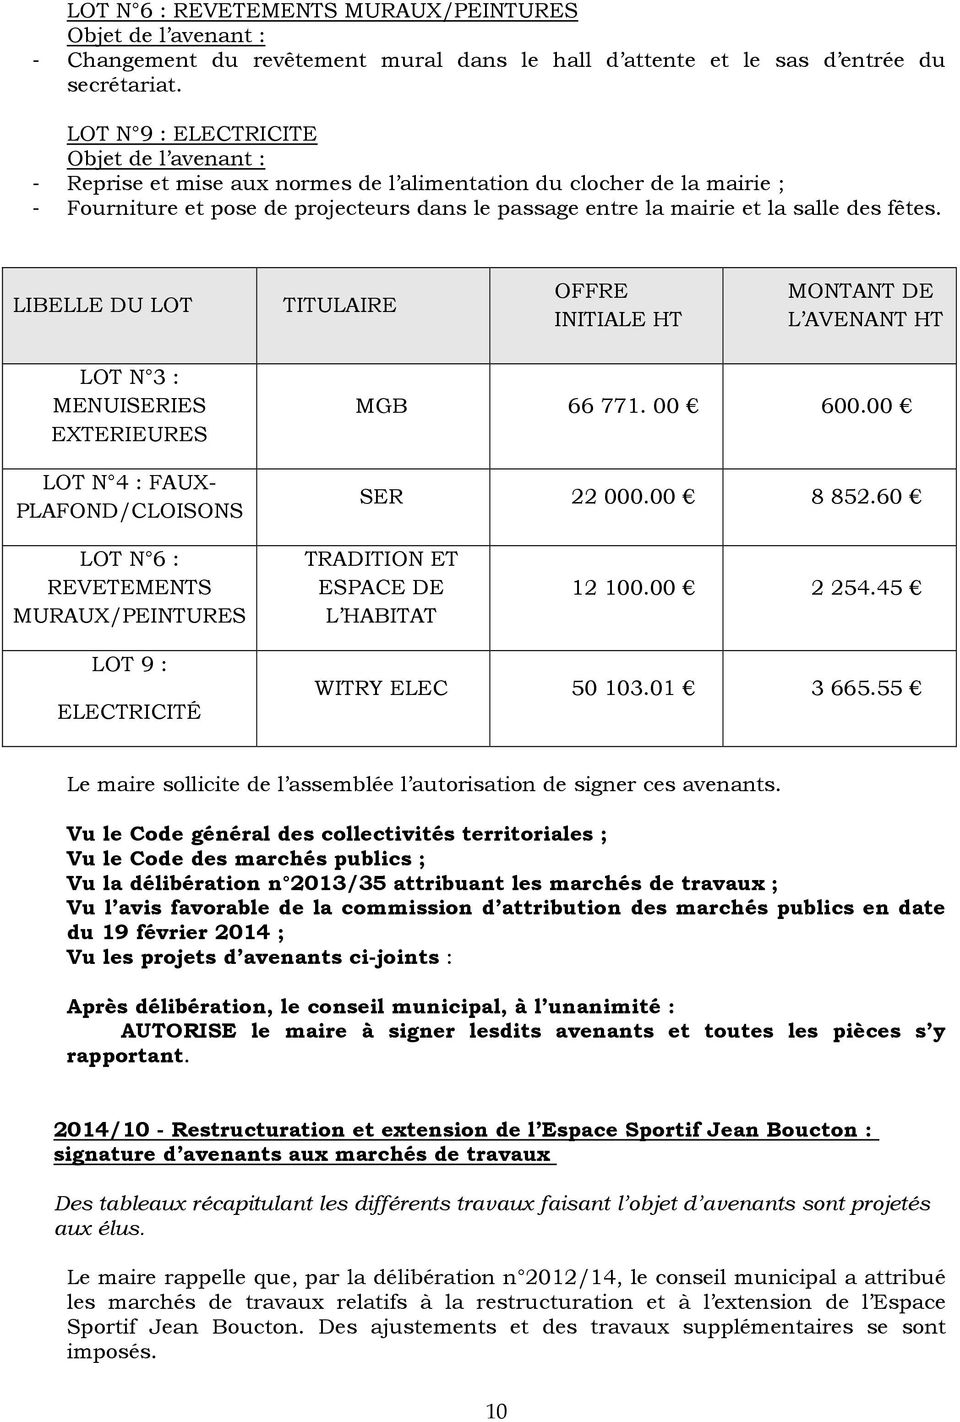 LIBELLE DU LOT TITULAIRE OFFRE INITIALE HT MONTANT DE L AVENANT HT LOT N 3 : MENUISERIES EXTERIEURES LOT N 4 : FAUX- PLAFOND/CLOISONS MGB 66 771. 00 600.00 SER 22 000.00 8 852.